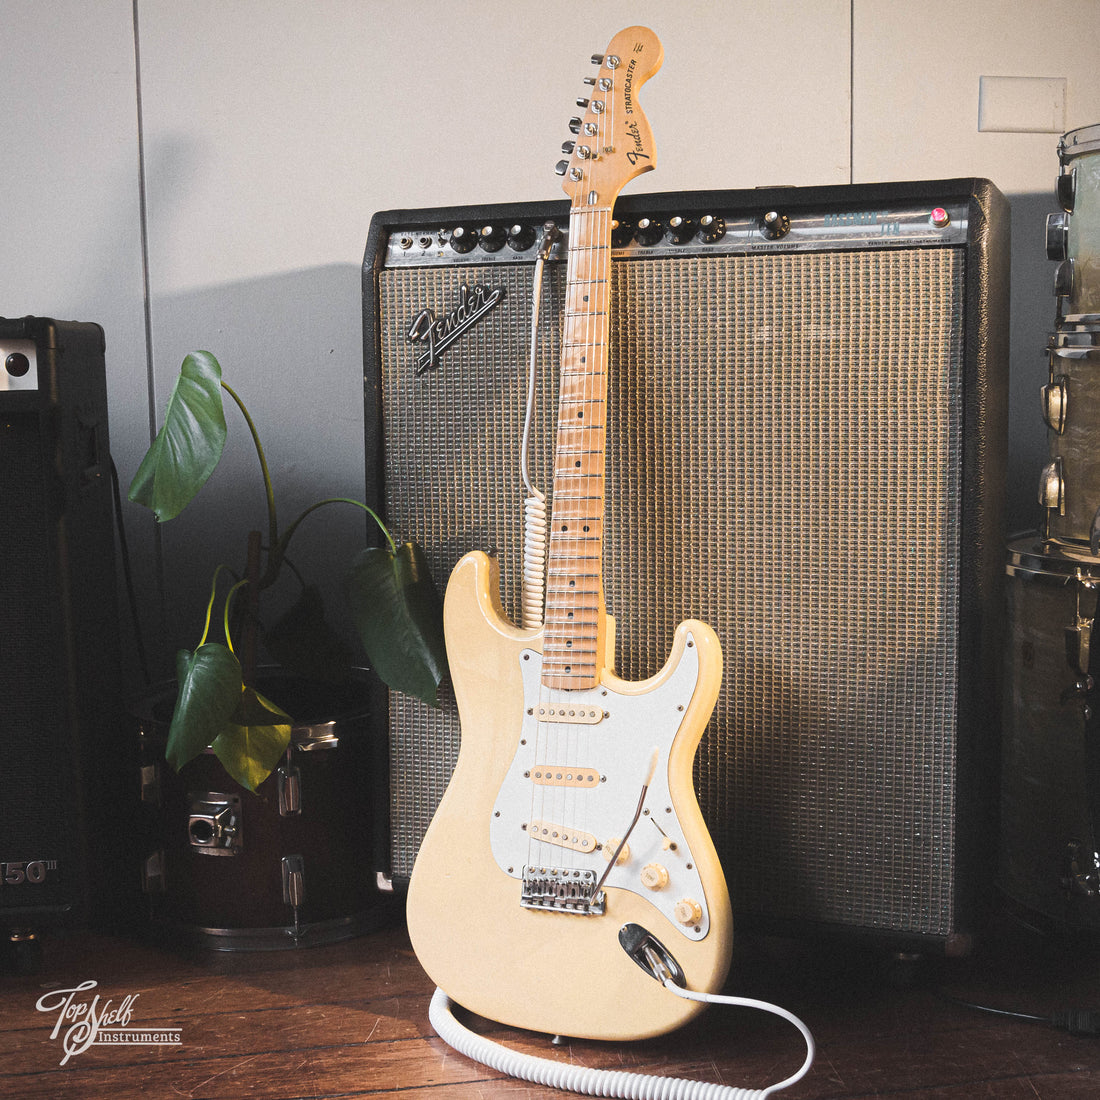 Fender Japan '72 Stratocaster ST72-95DM Yellow White 1989